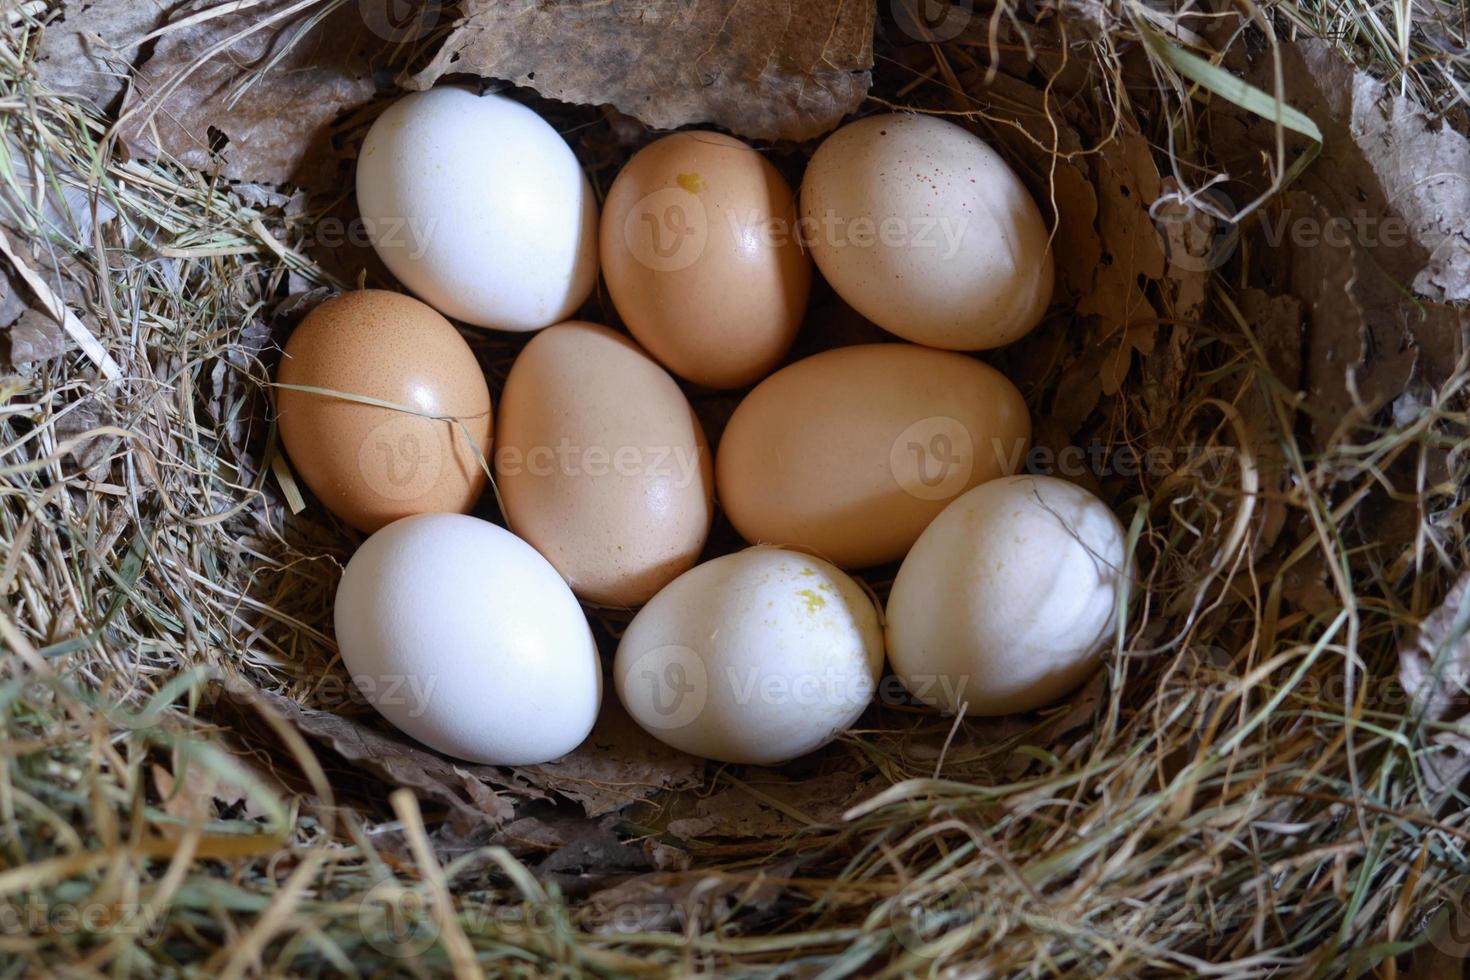 œufs de poule dans le nid.œufs de poule du fermier sur du foin dans le nid. photo